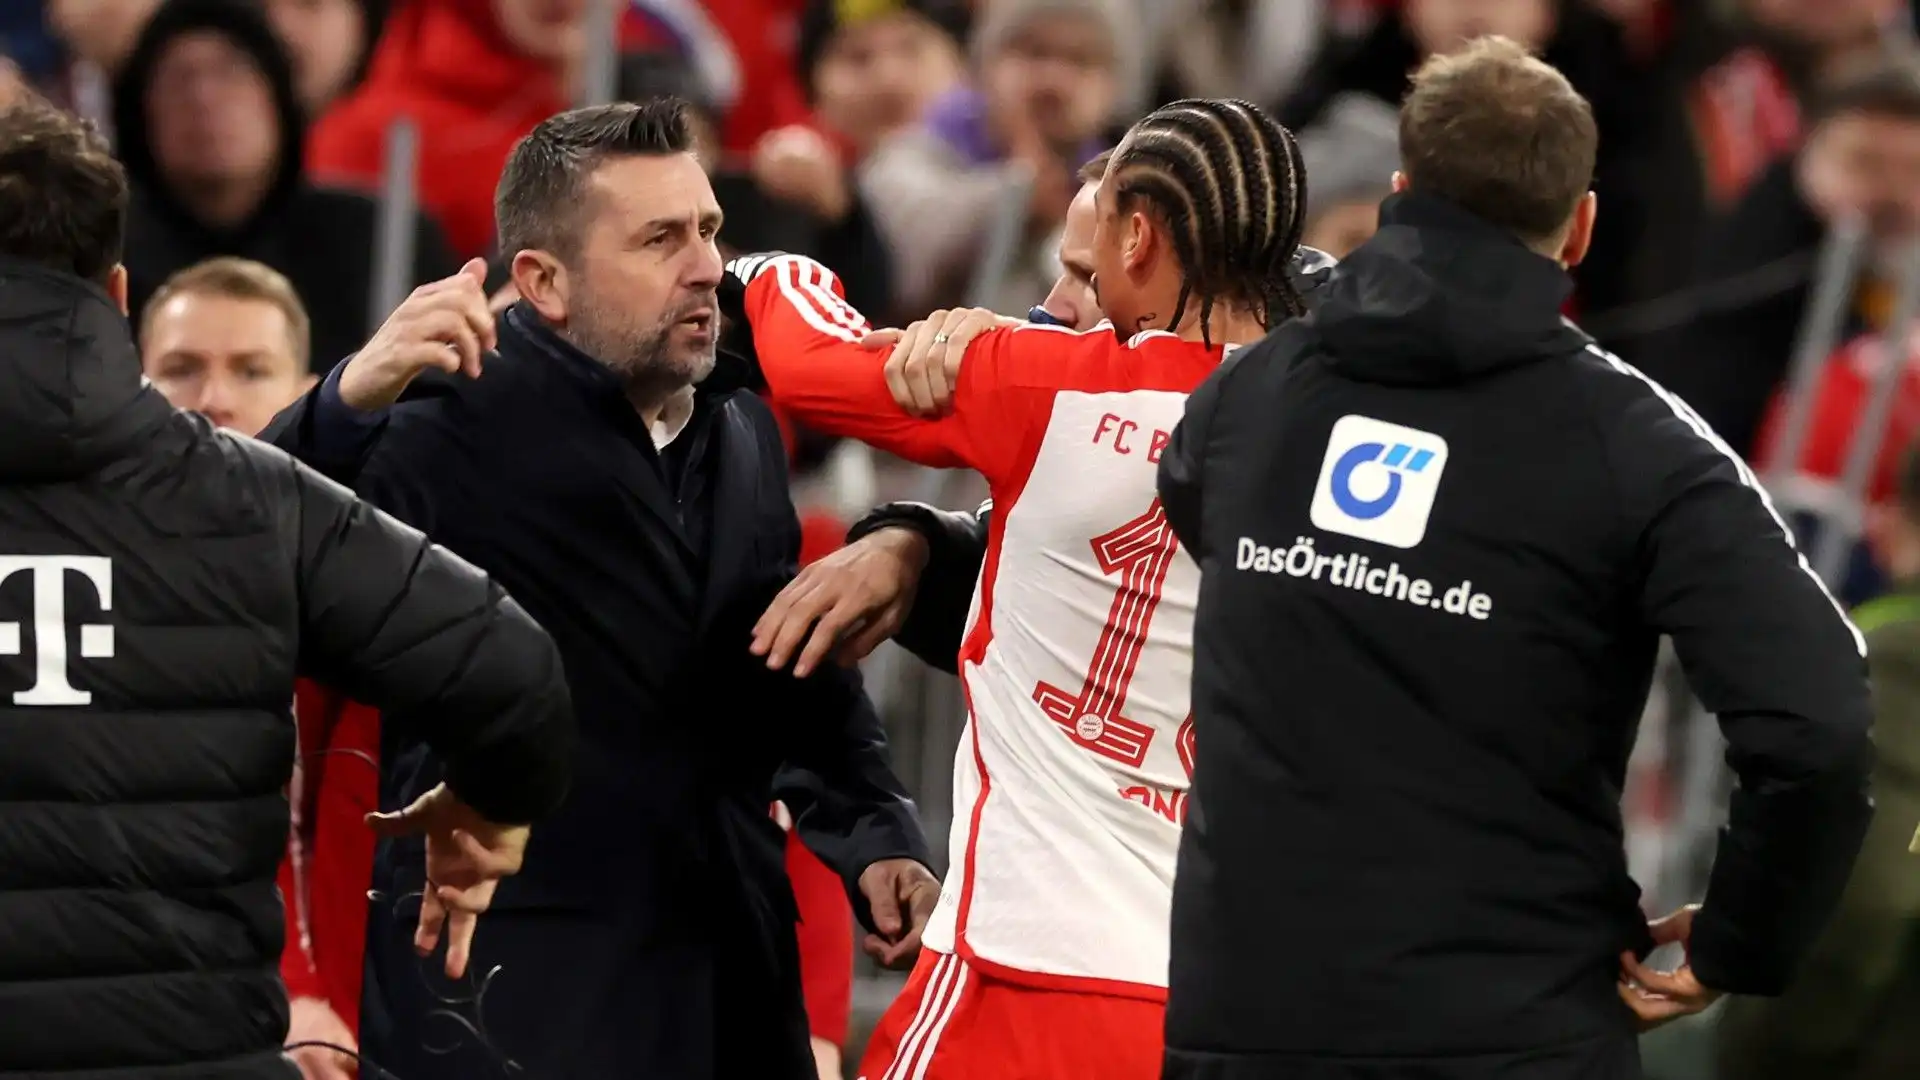 Vergogna in Bundesliga: le foto della rissa tra Sané e l'allenatore